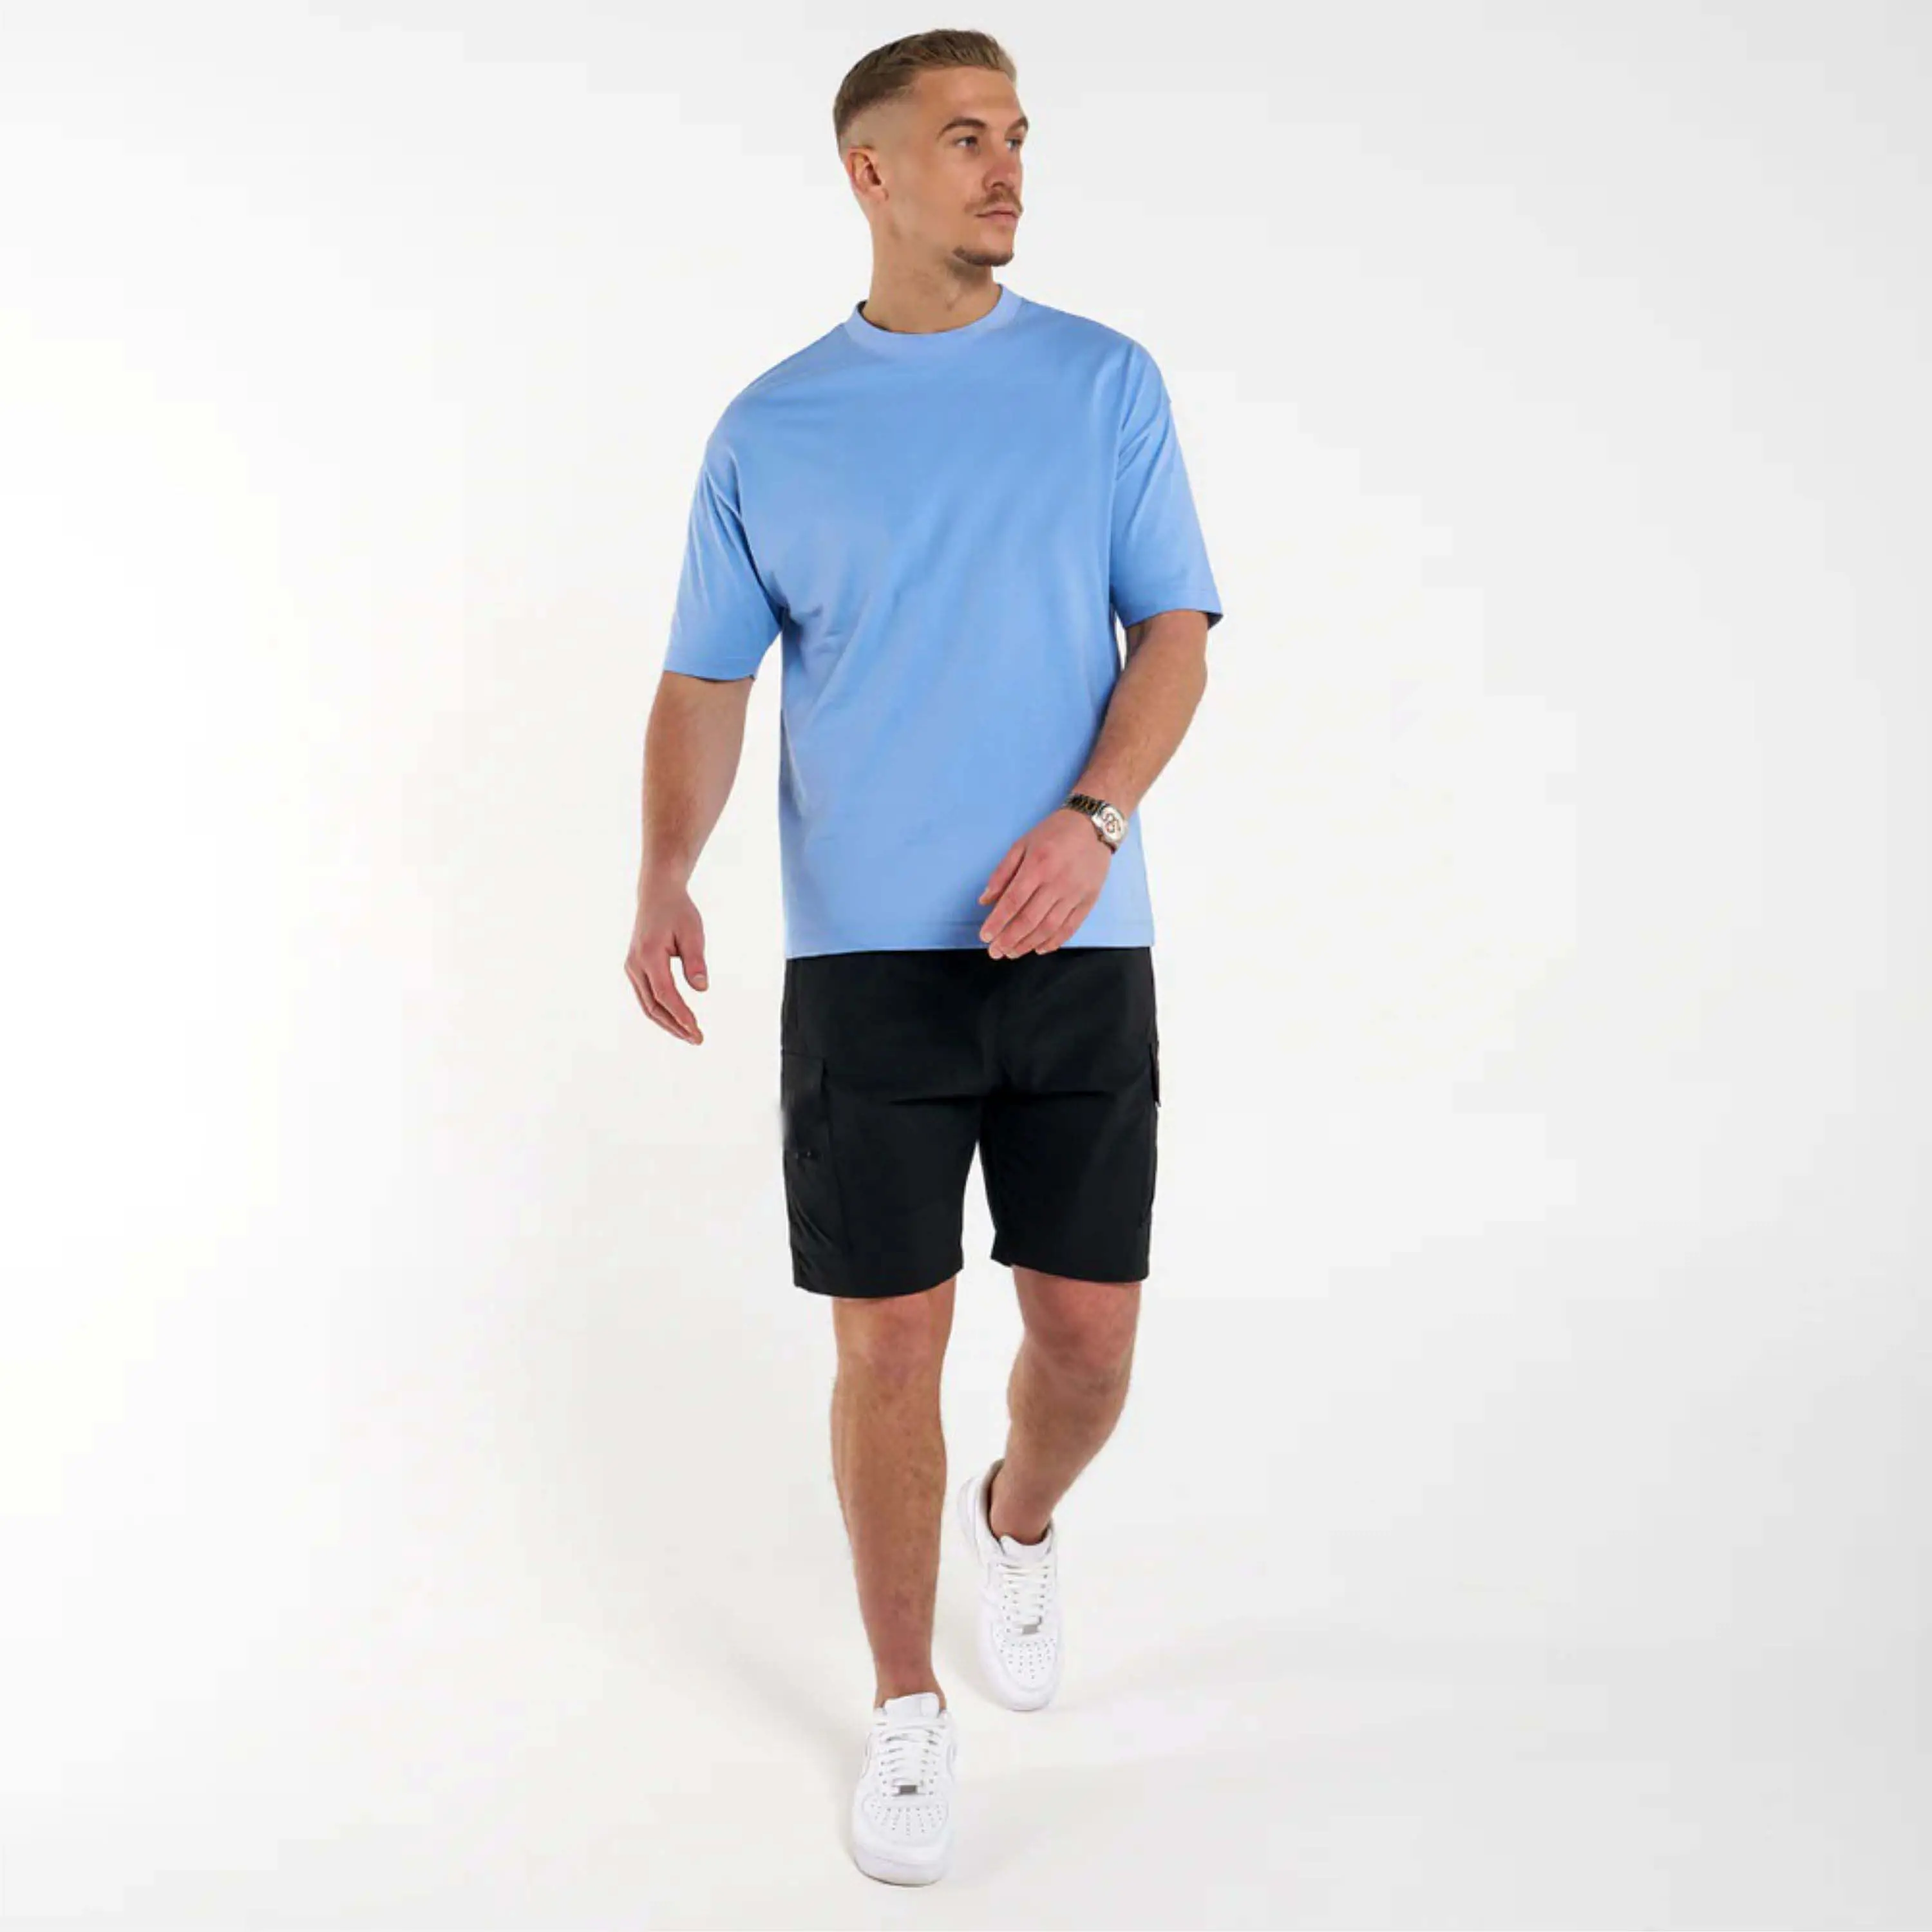 Maglietta Streetwear Athleisure-tessuto elasticizzato, traspirante, Look da palestra a strada